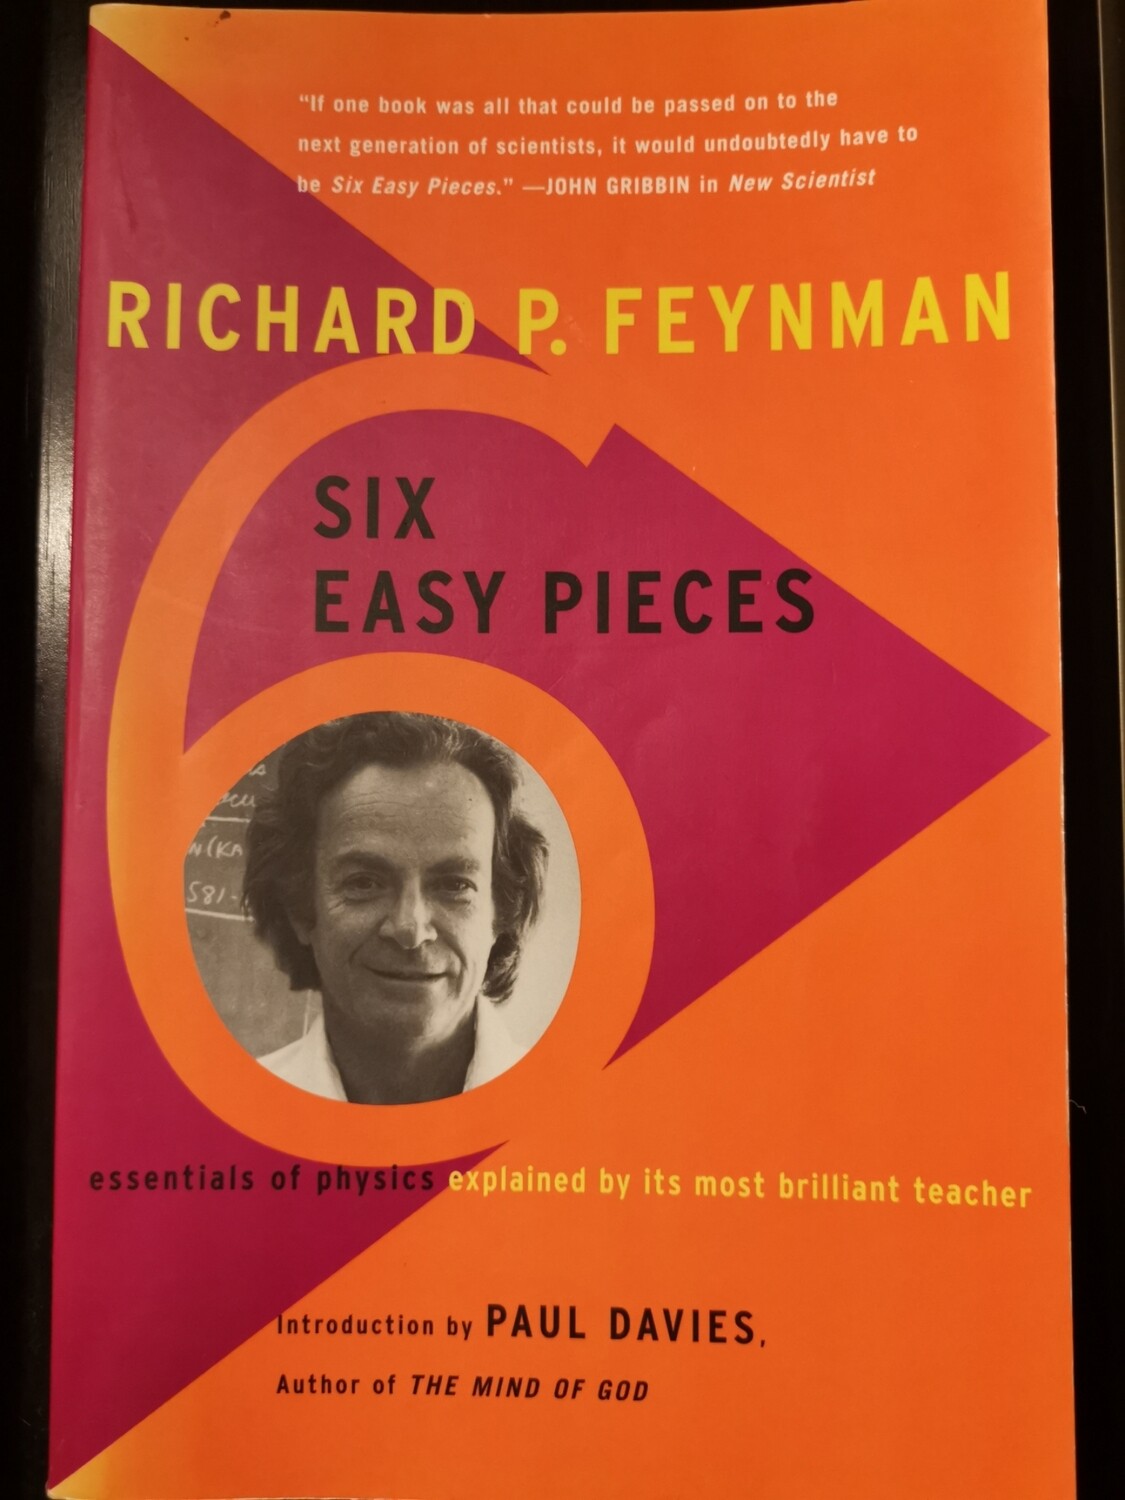 Six easy pieces, Richard Feynman